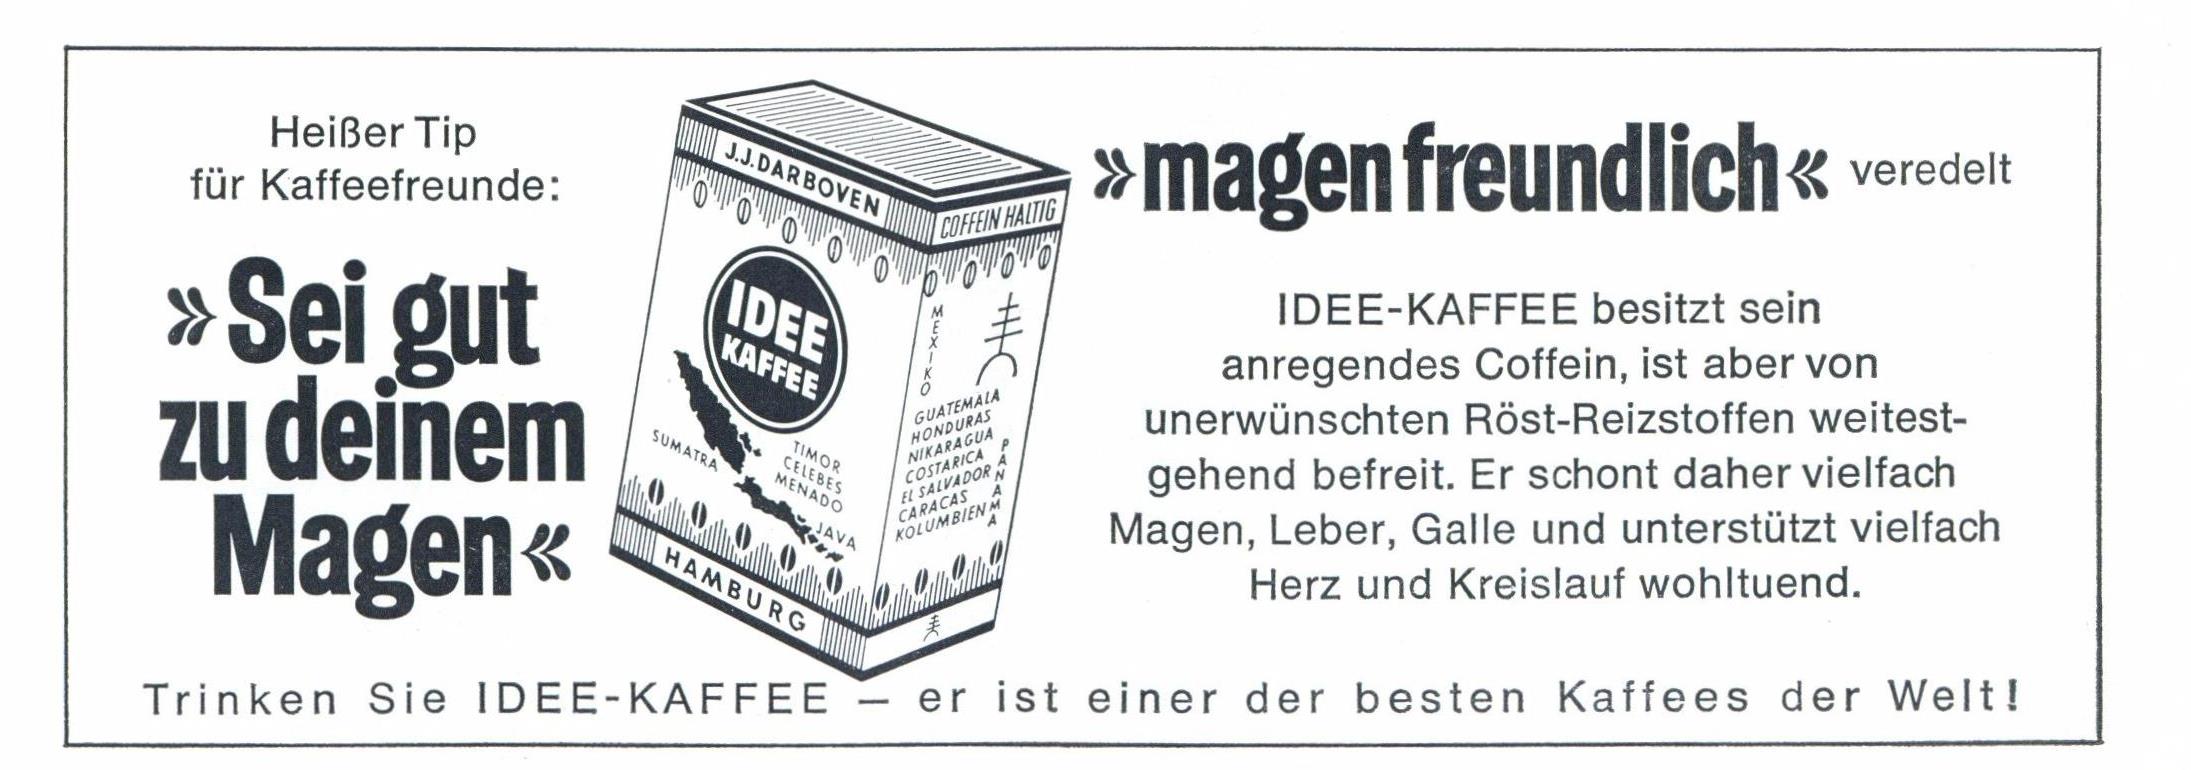 Idee Kaffee 1969 01.jpg